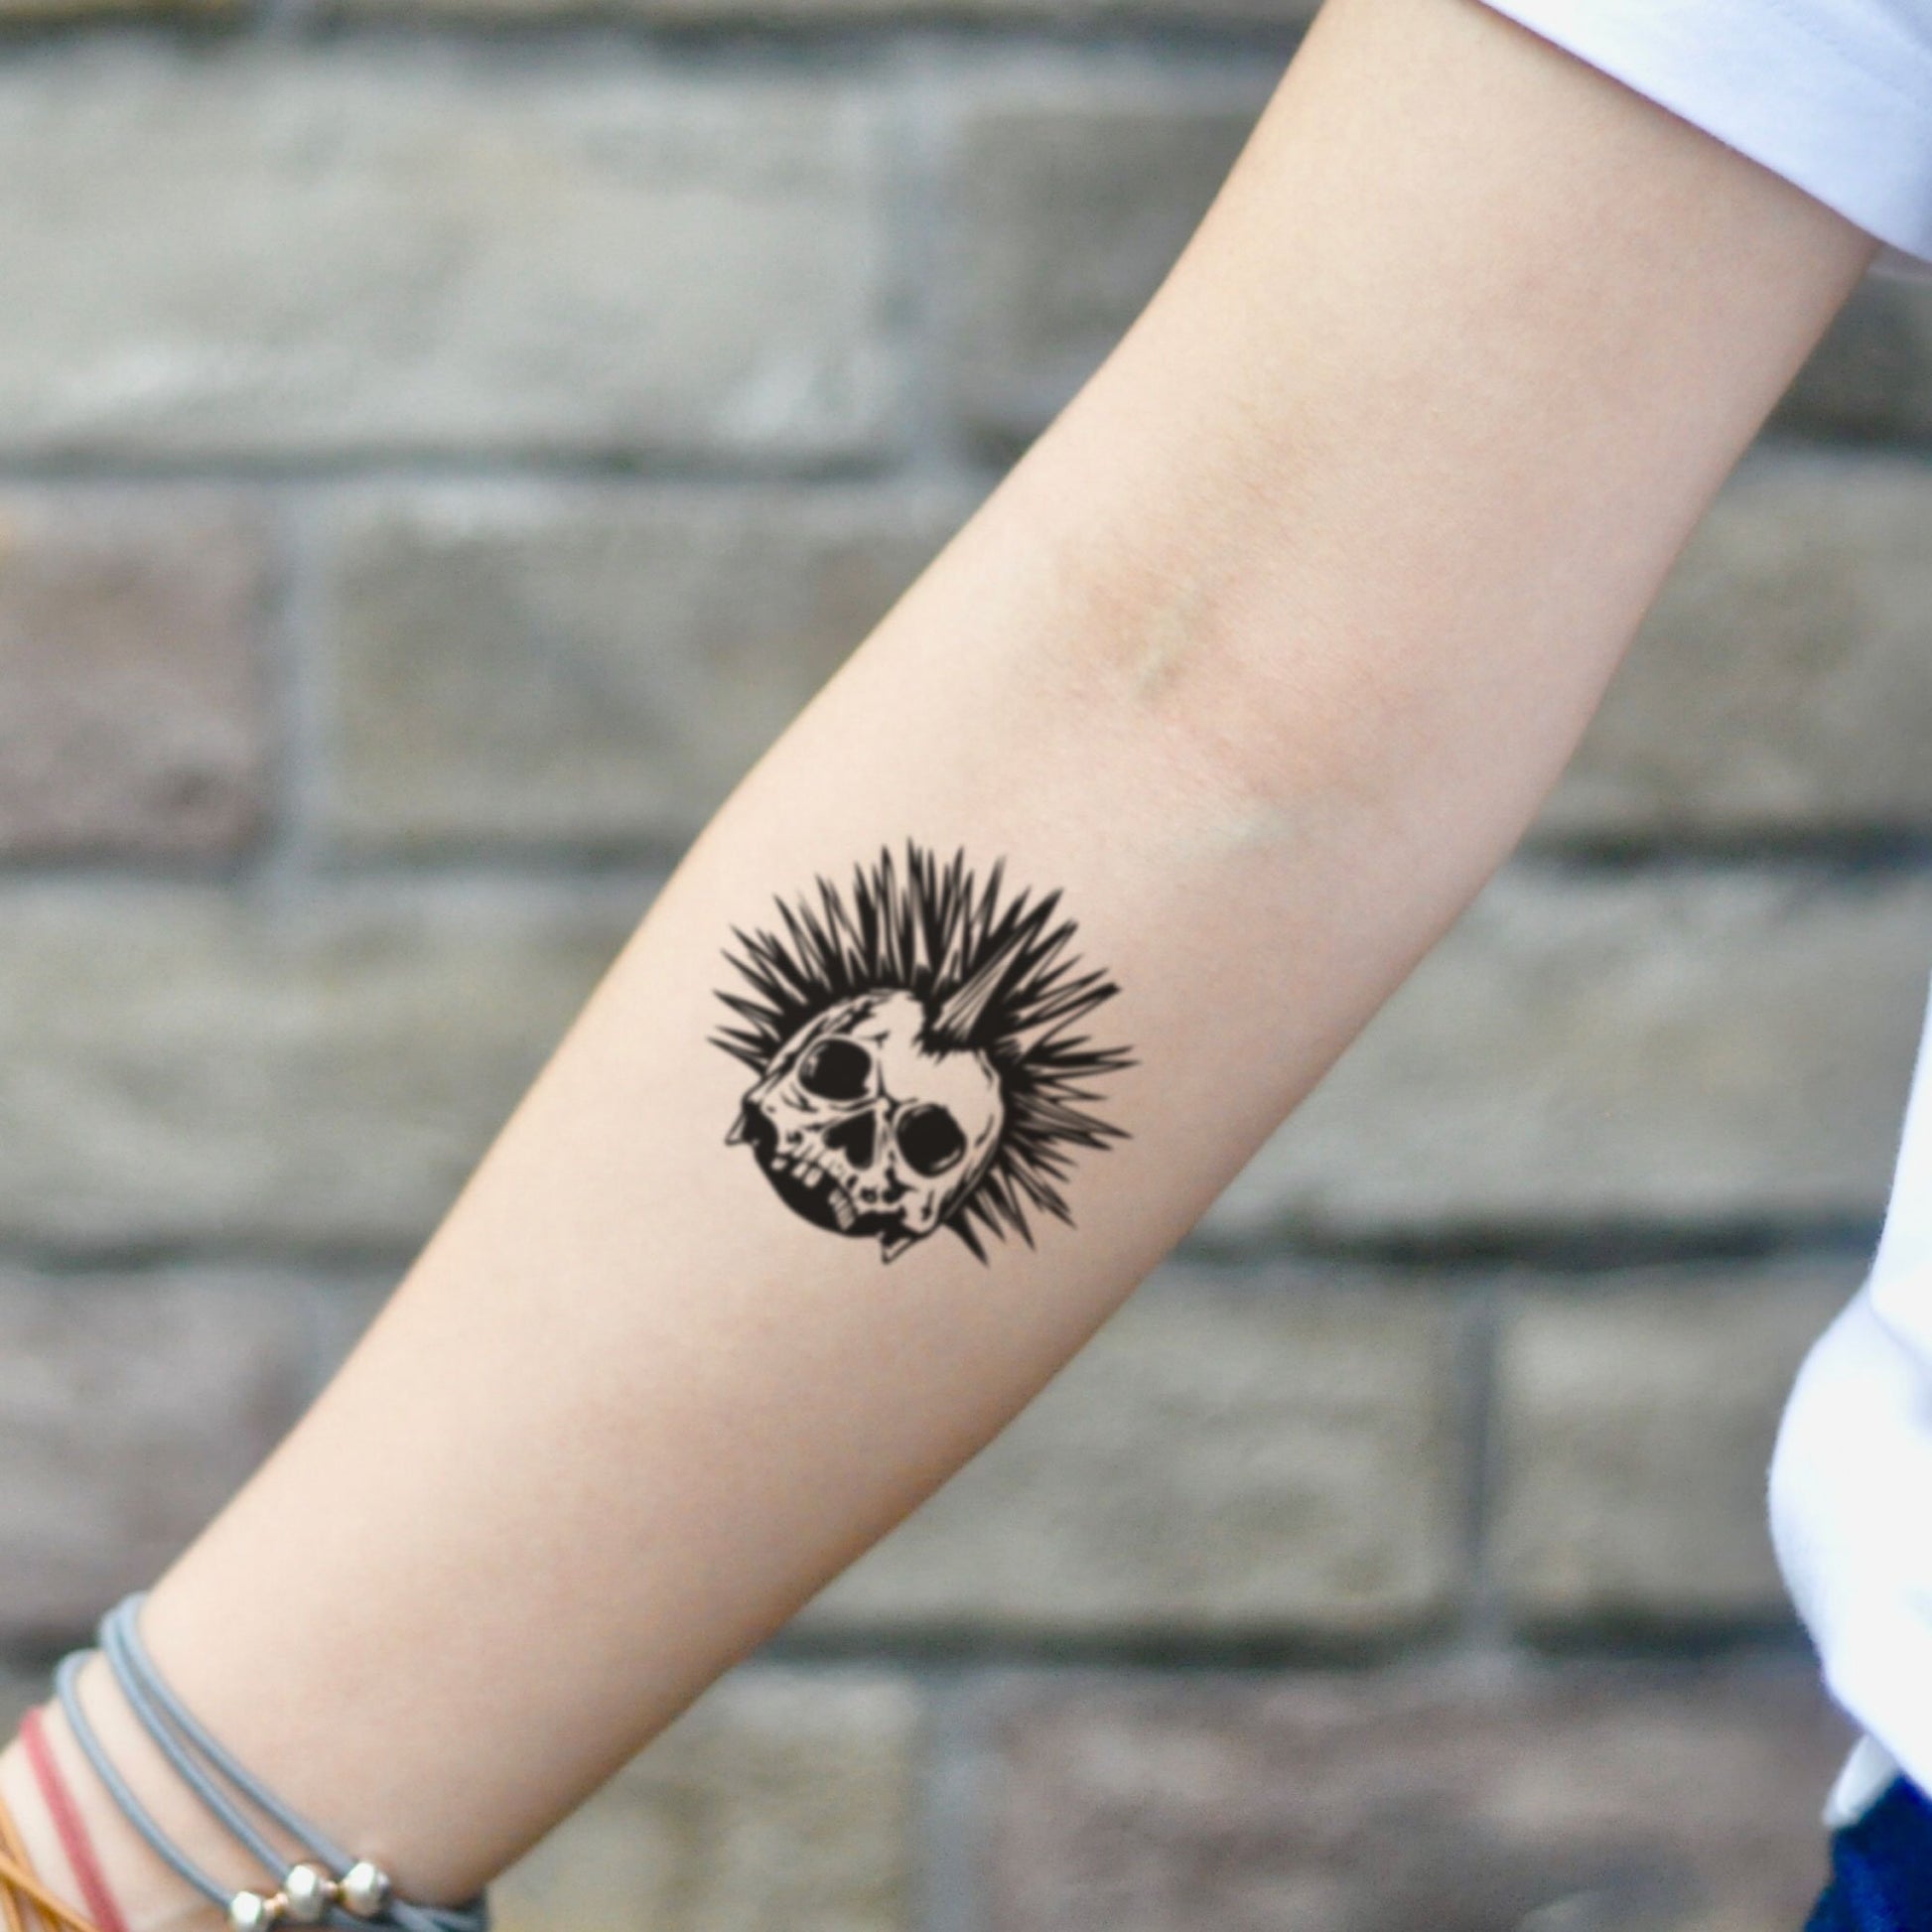 fake small punky punk rock skull pop old school stree rocker illustrative temporary tattoo sticker design idea on inner arm